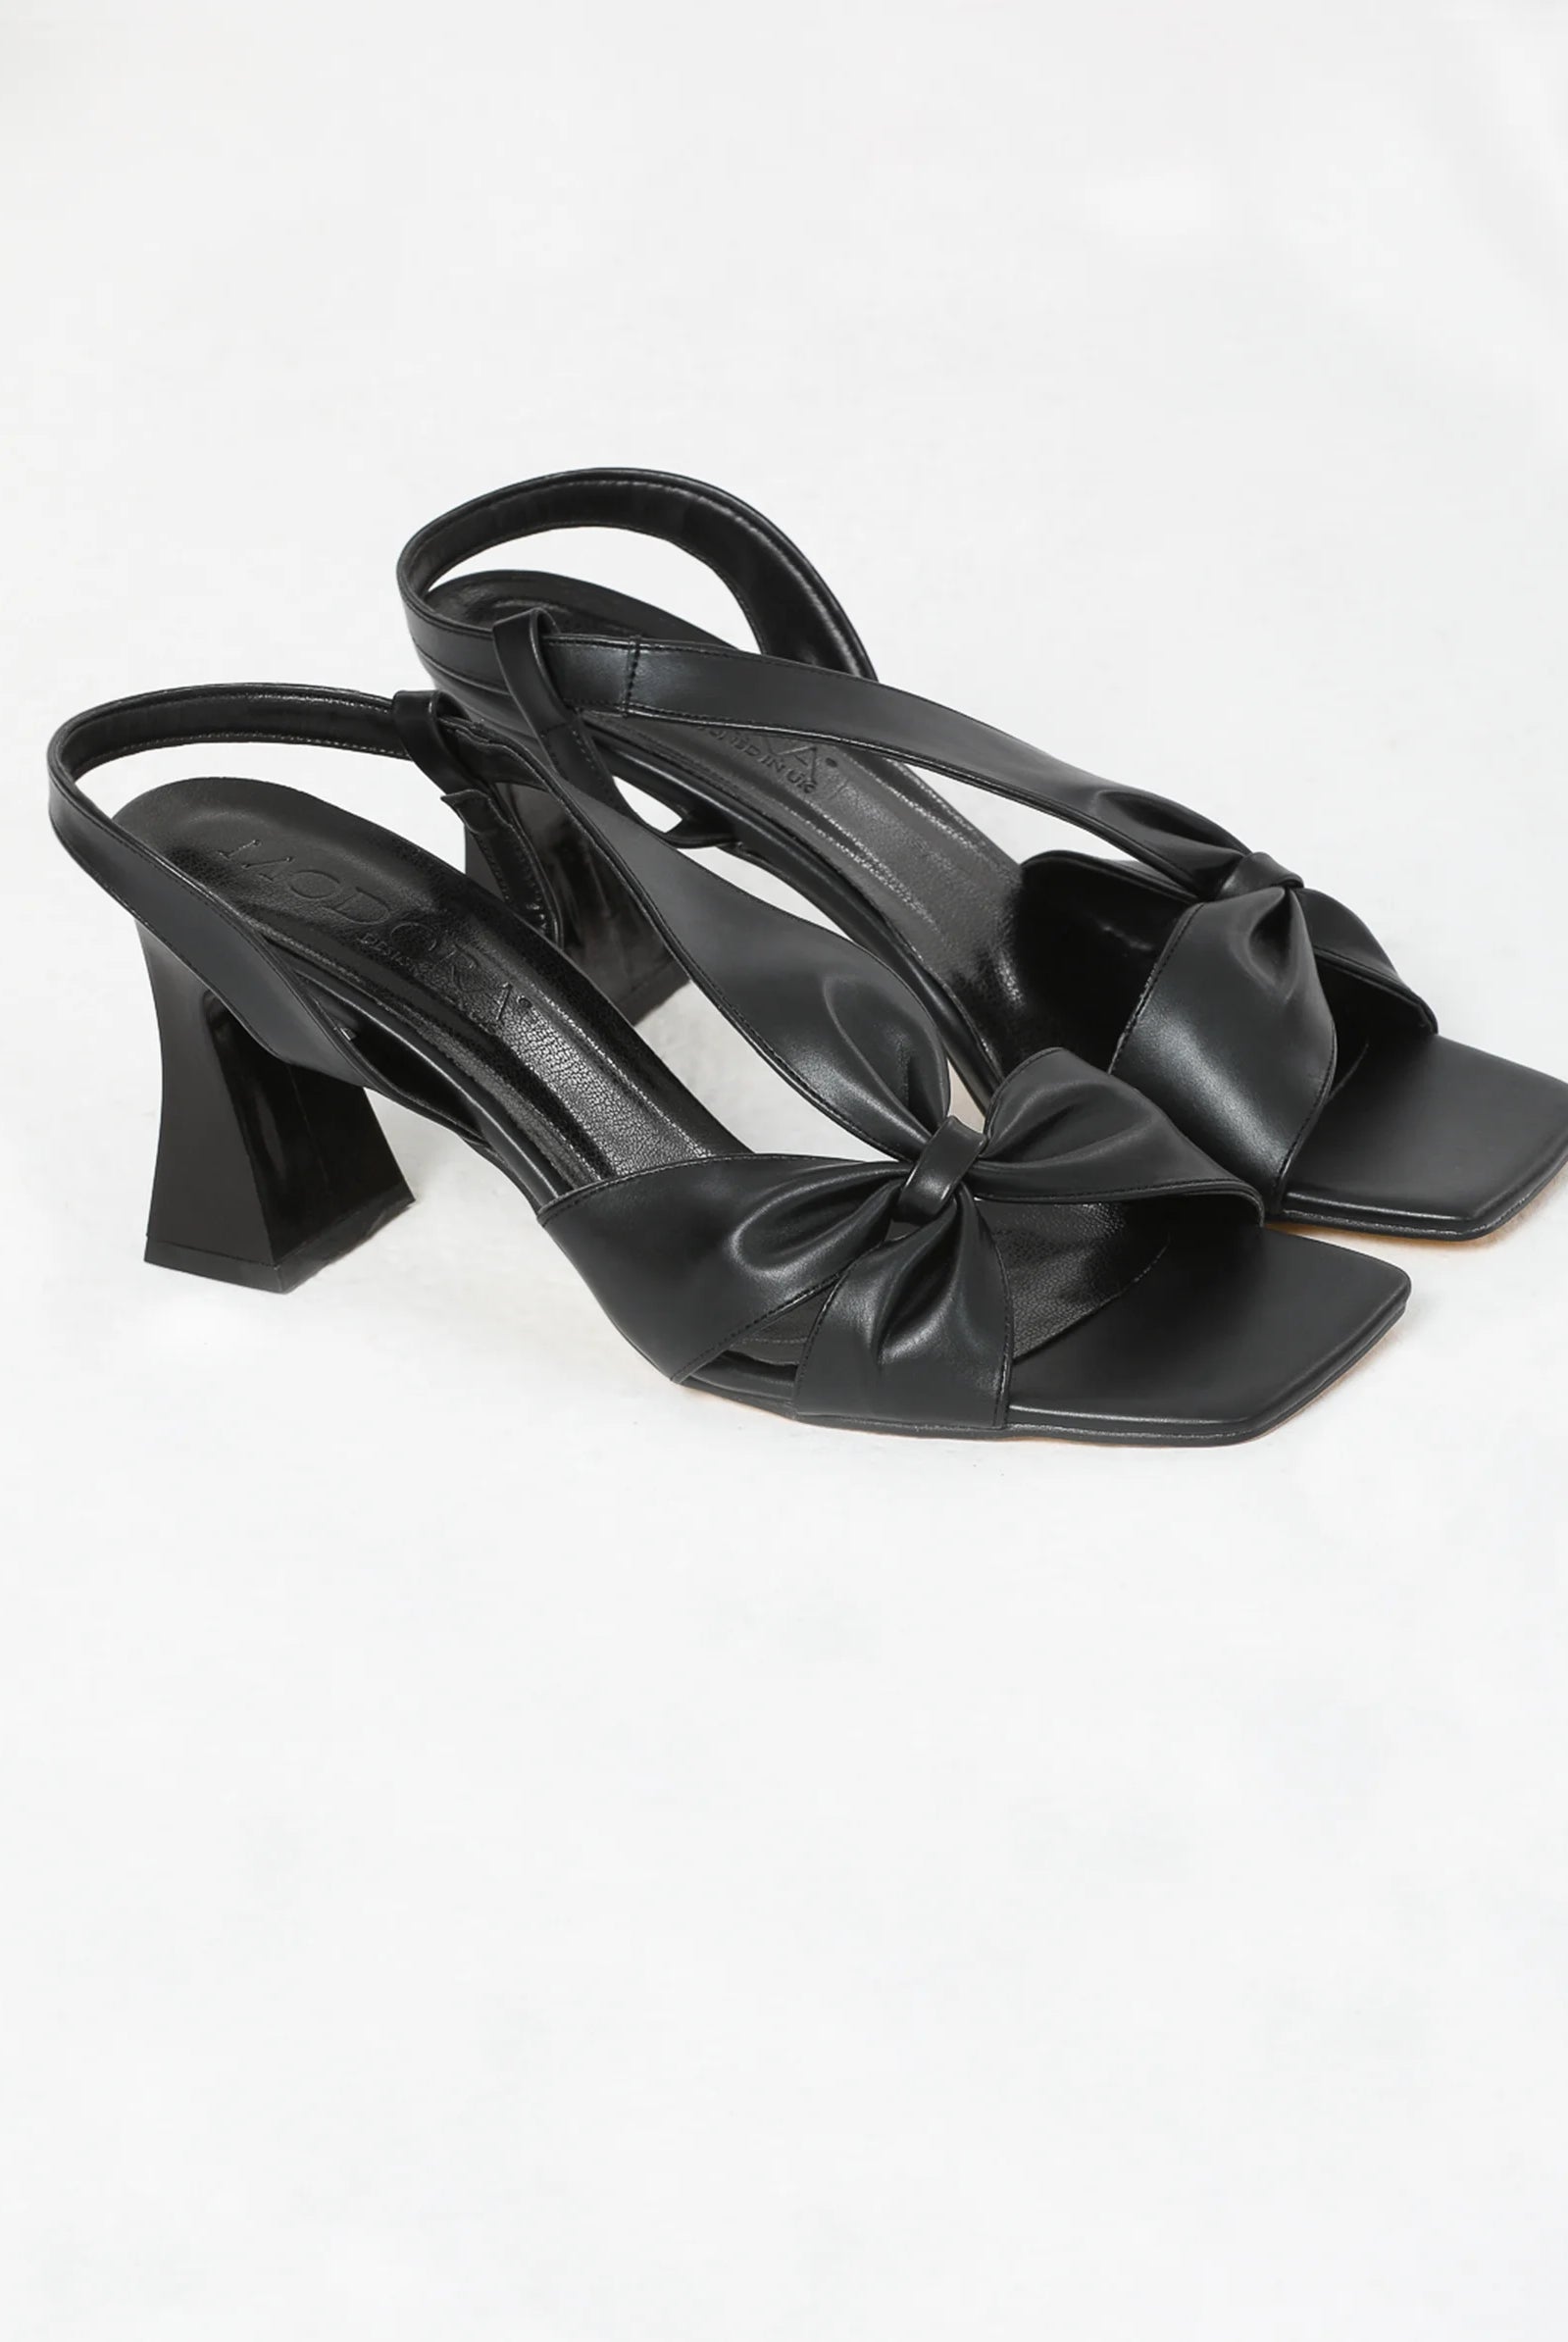 black mid heels uk